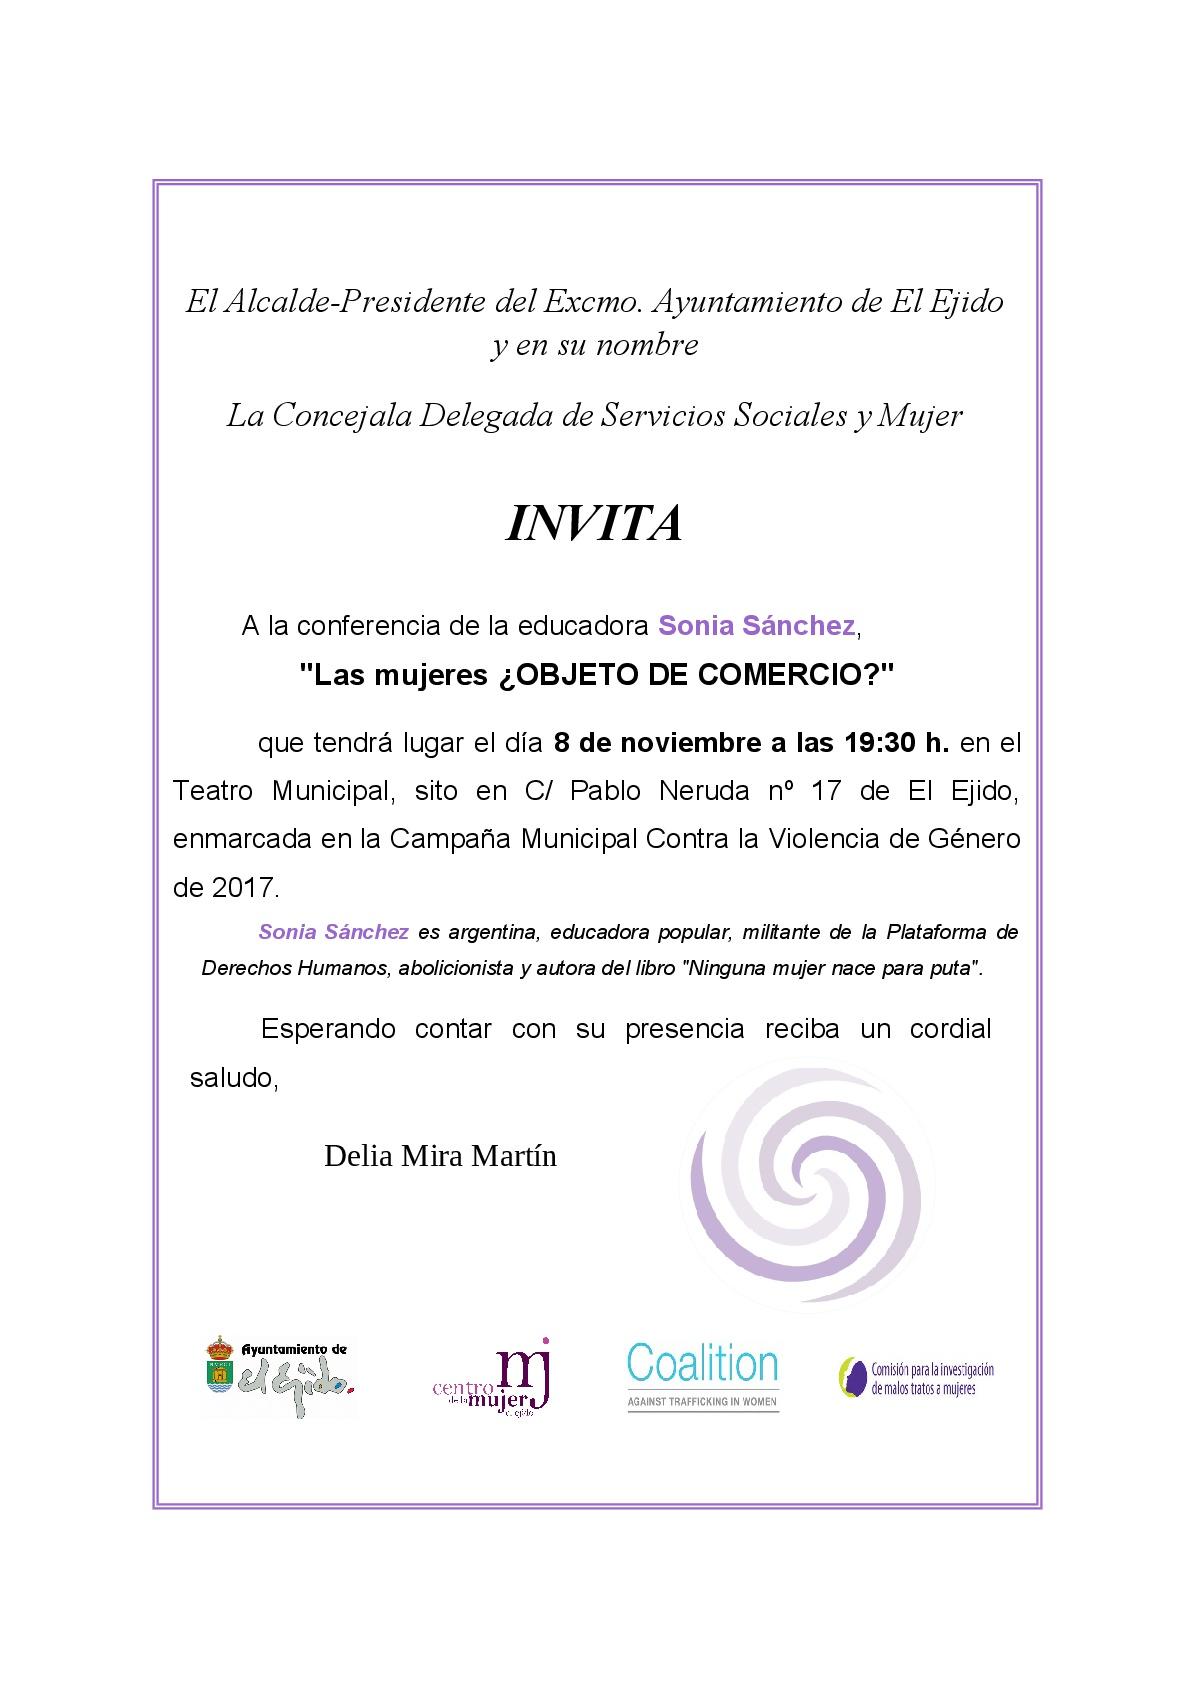 Conferencia Sonia Sánchez: invitación